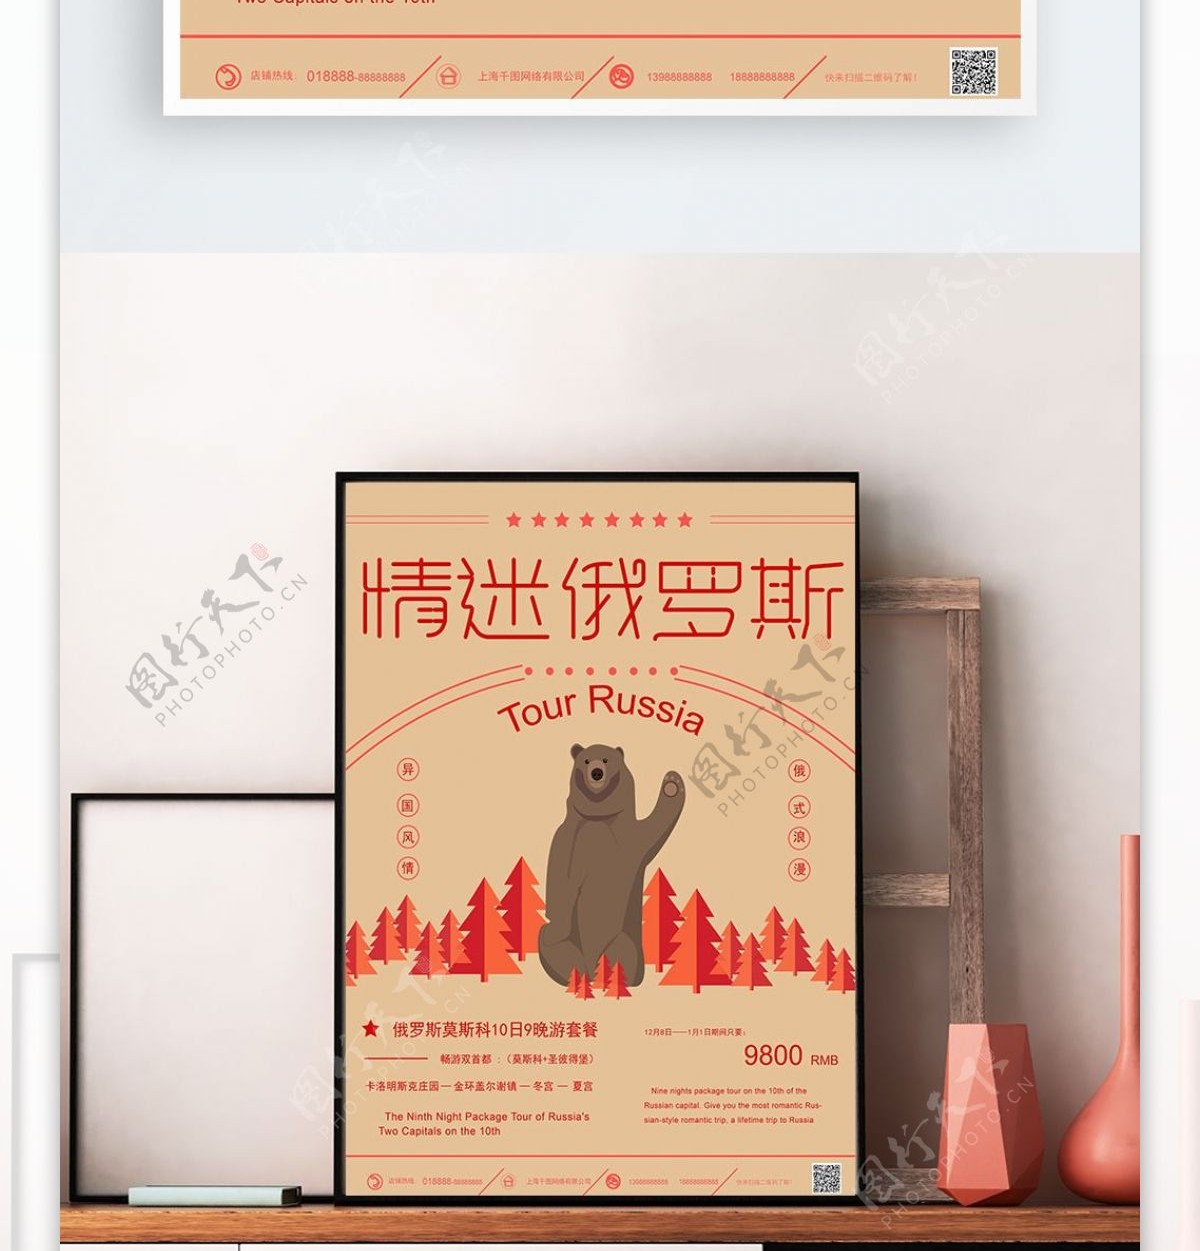 原创手绘灰熊俄罗斯旅游海报